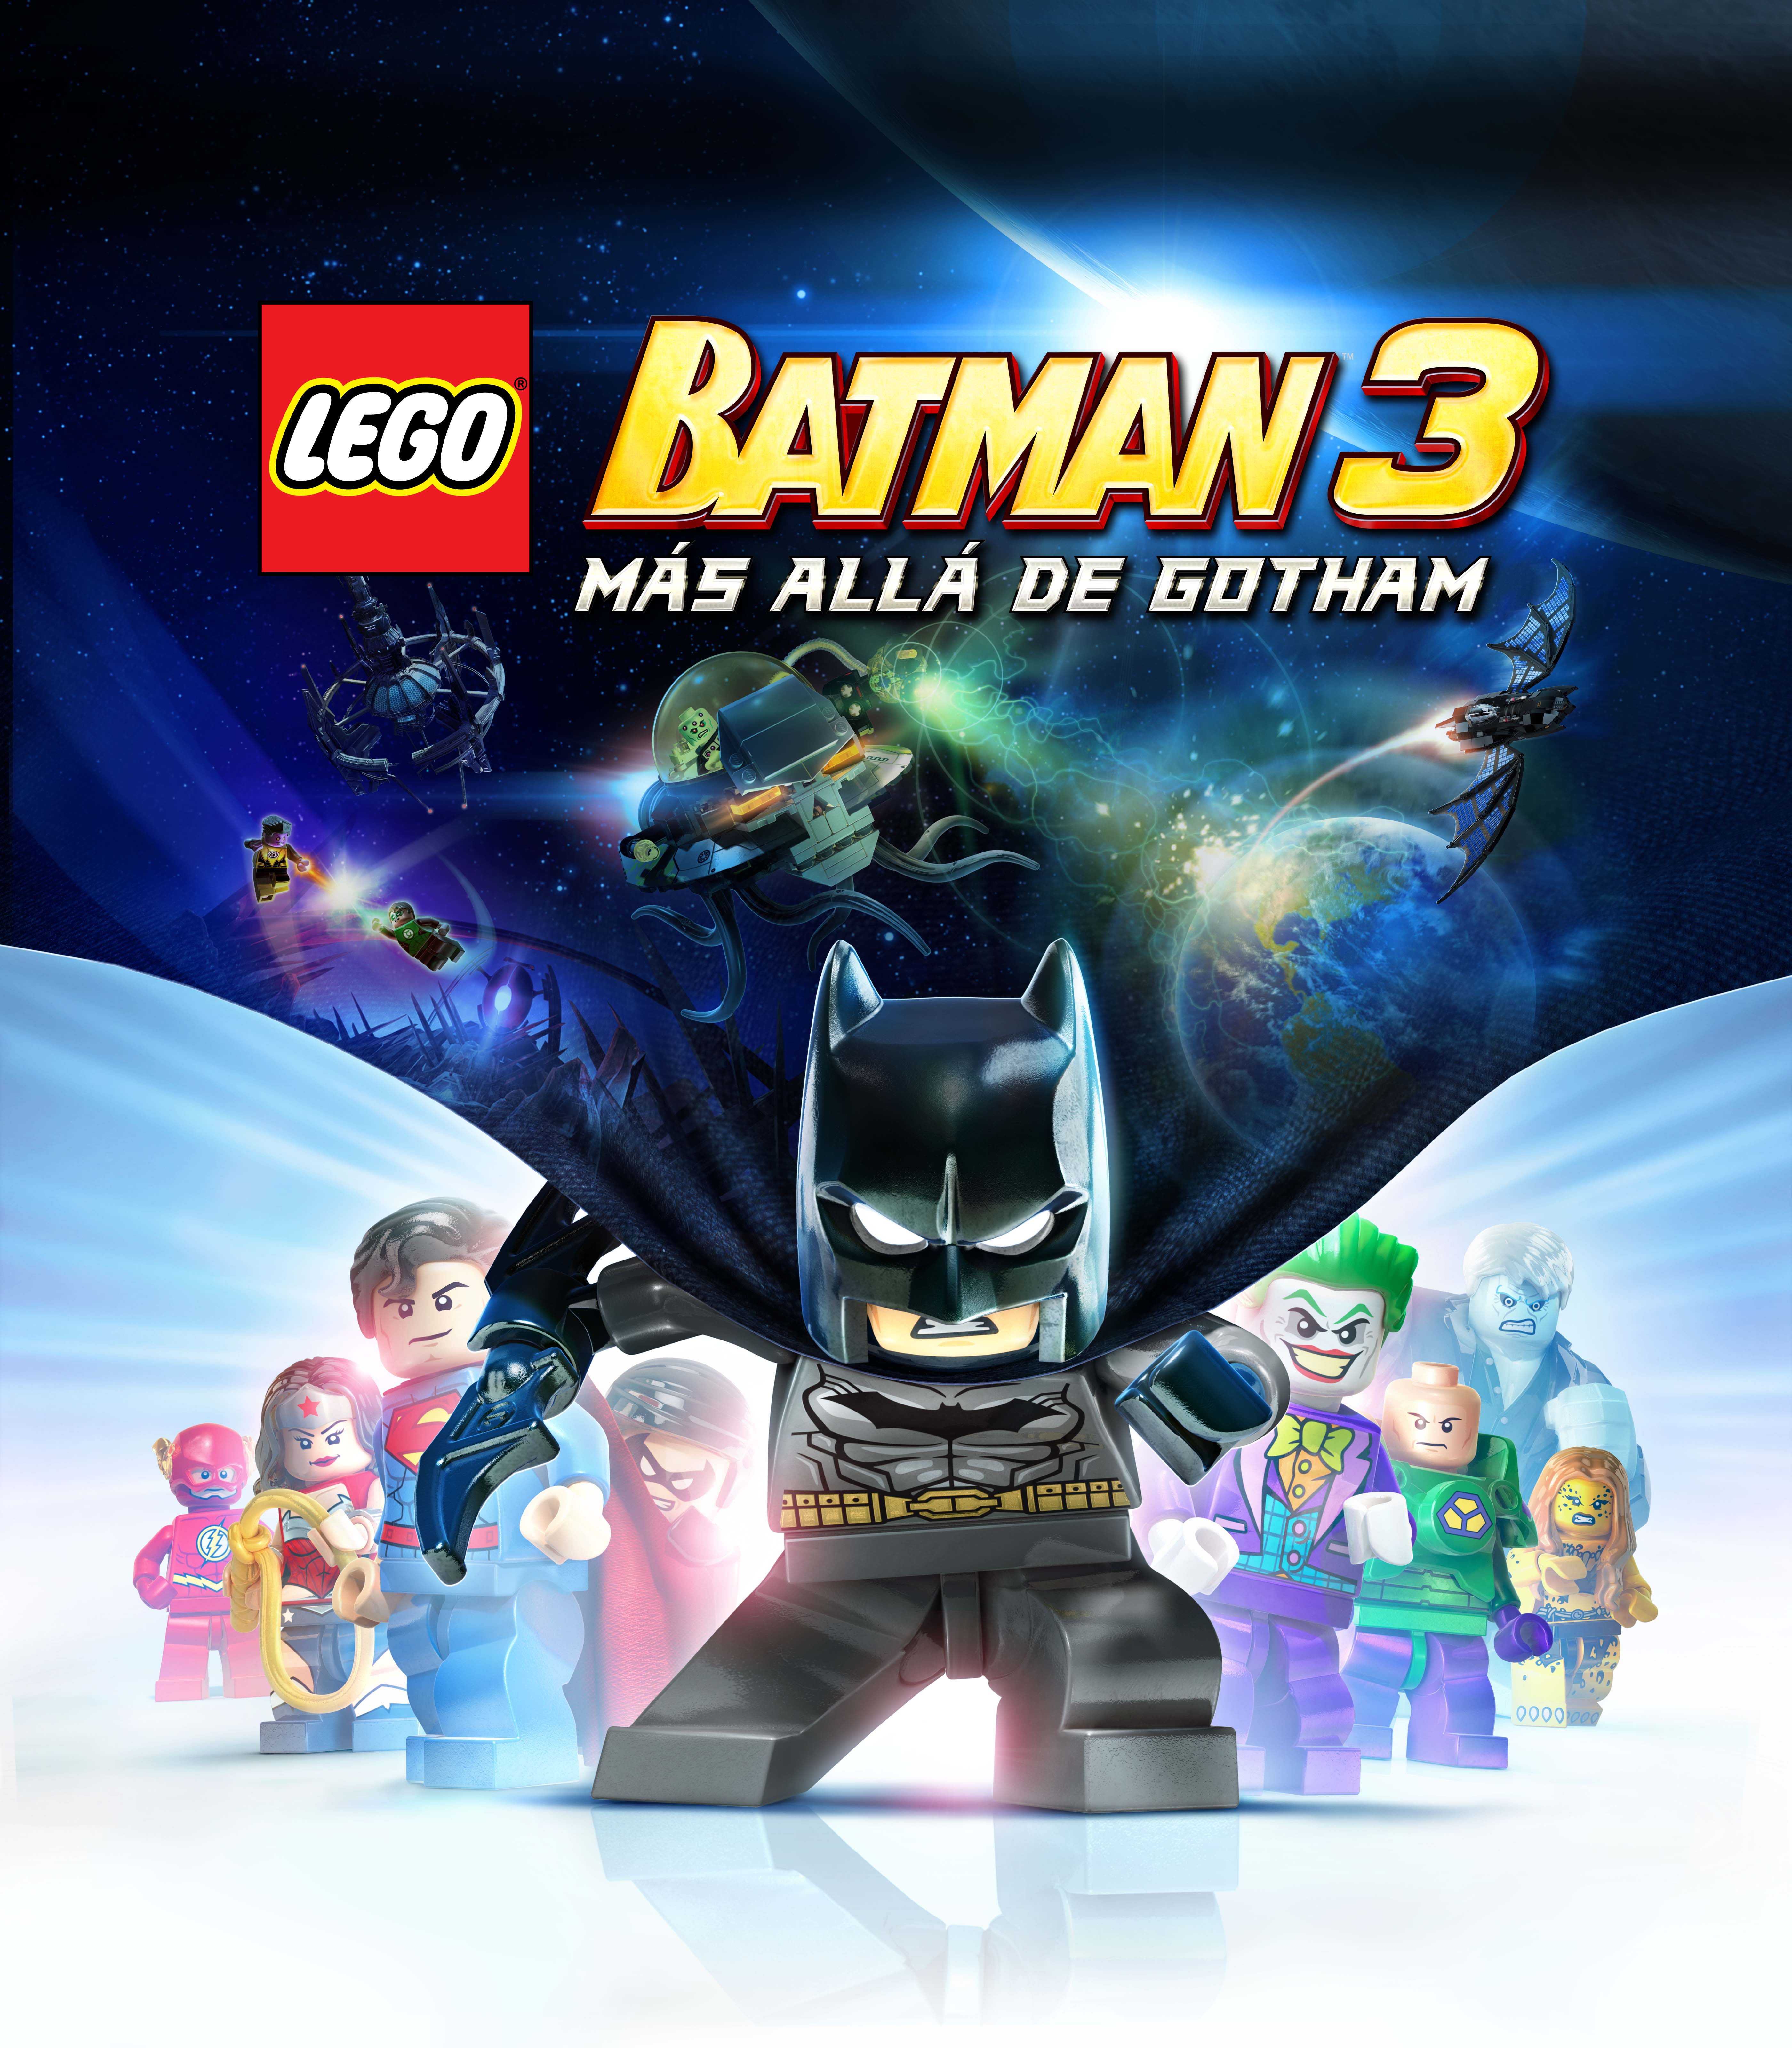 SAga de videojuegos de Lego Batman edad para niños y adolescentes